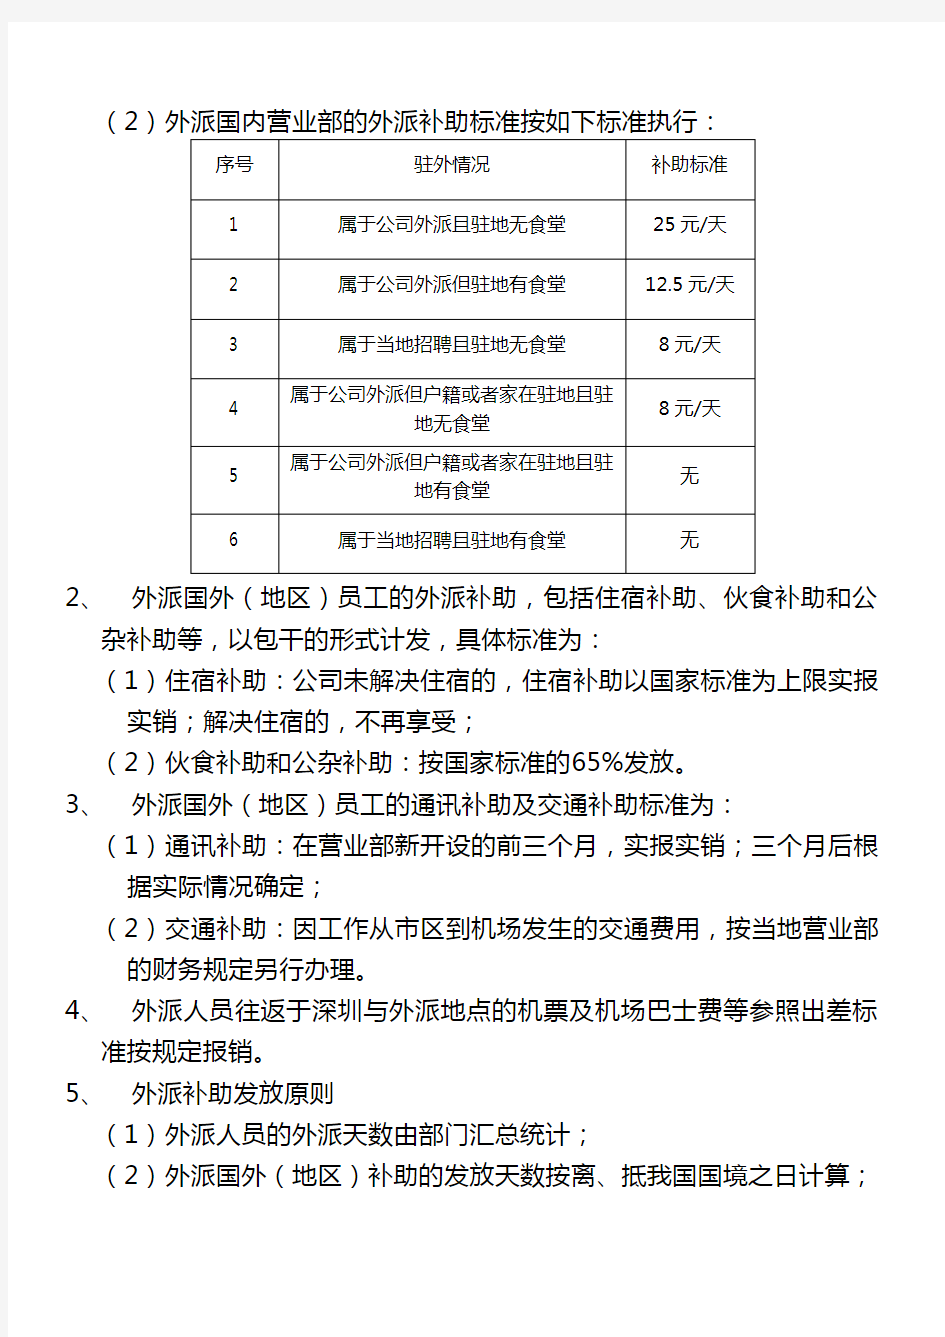 深圳航空有限责任公司外派人员补助发放办法